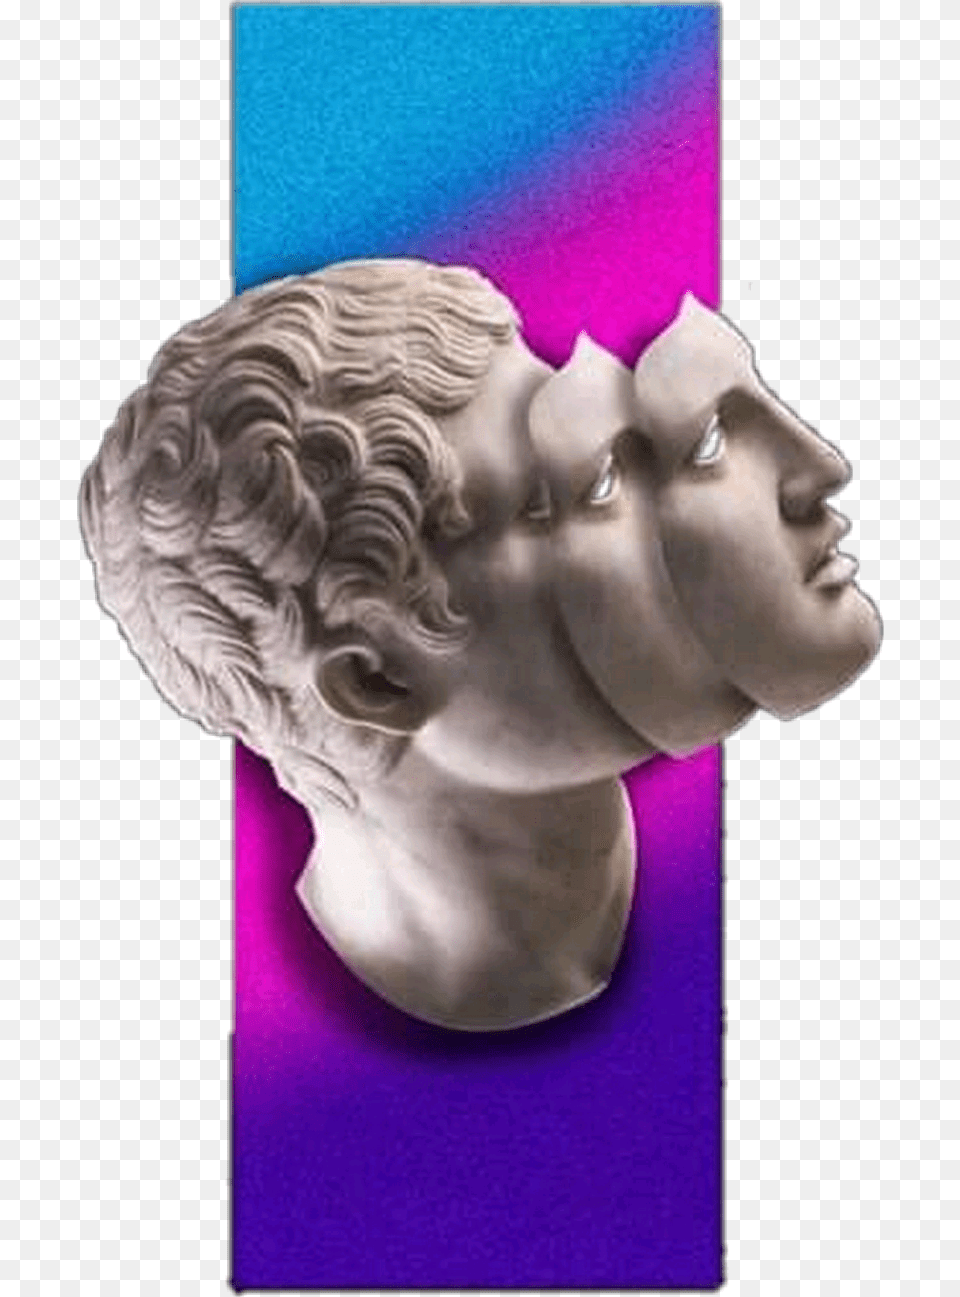 Glitch Glitchplease Face Cara Estatua Tumblr Glitch Art, Figurine, Person, Head Png